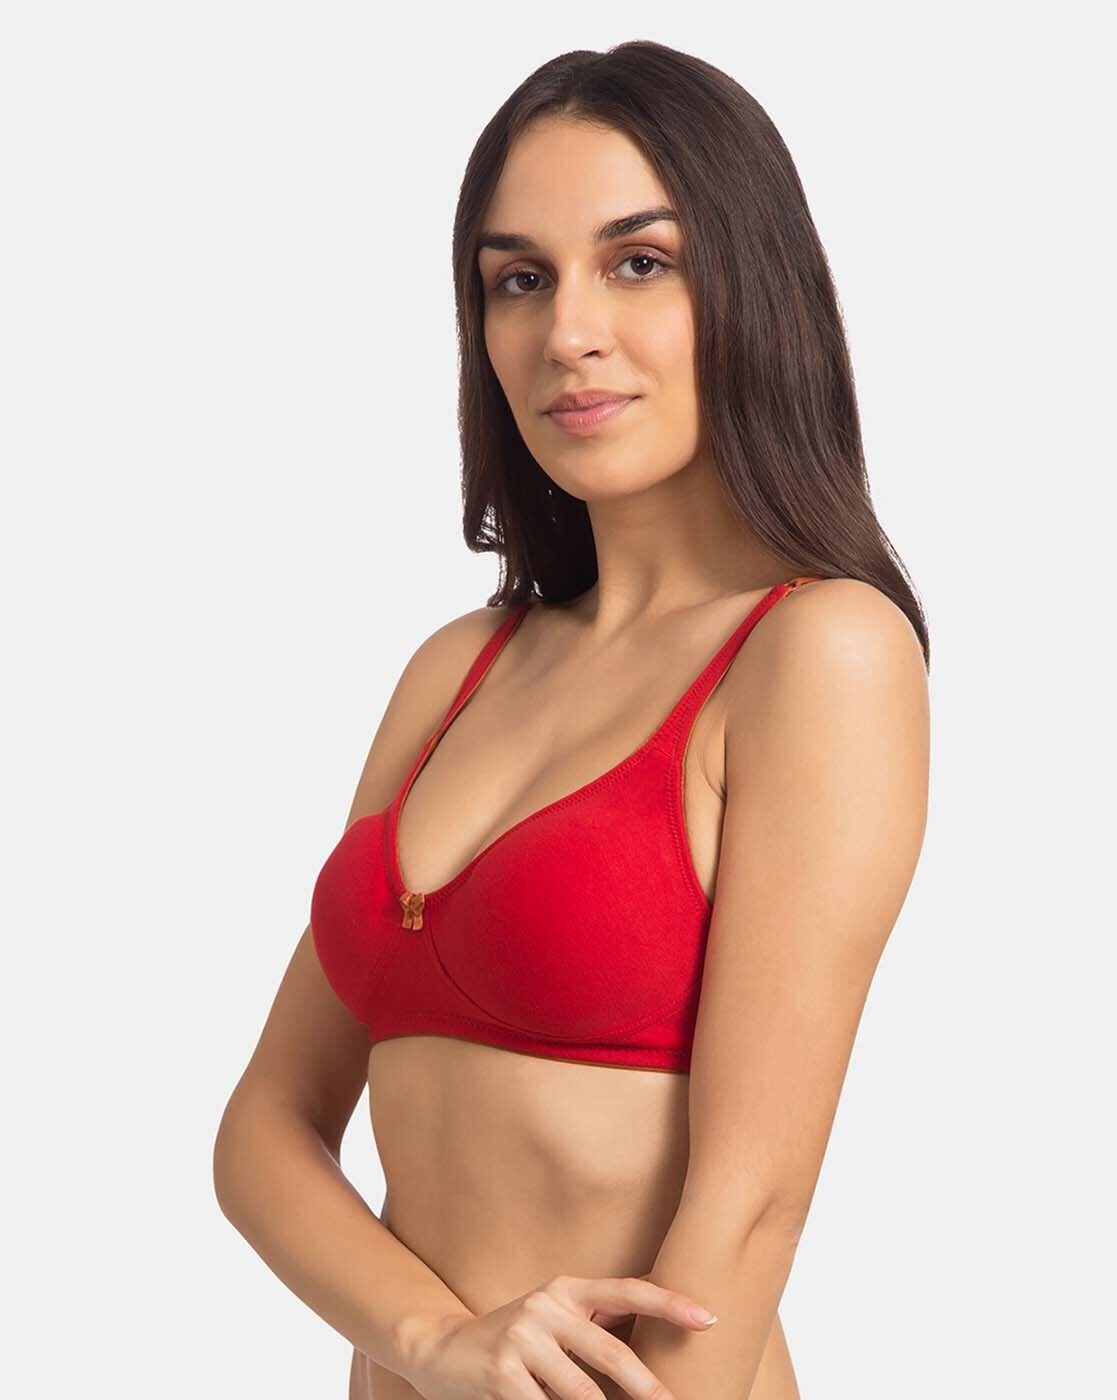 Buy Red Bras for Women by Tweens Online